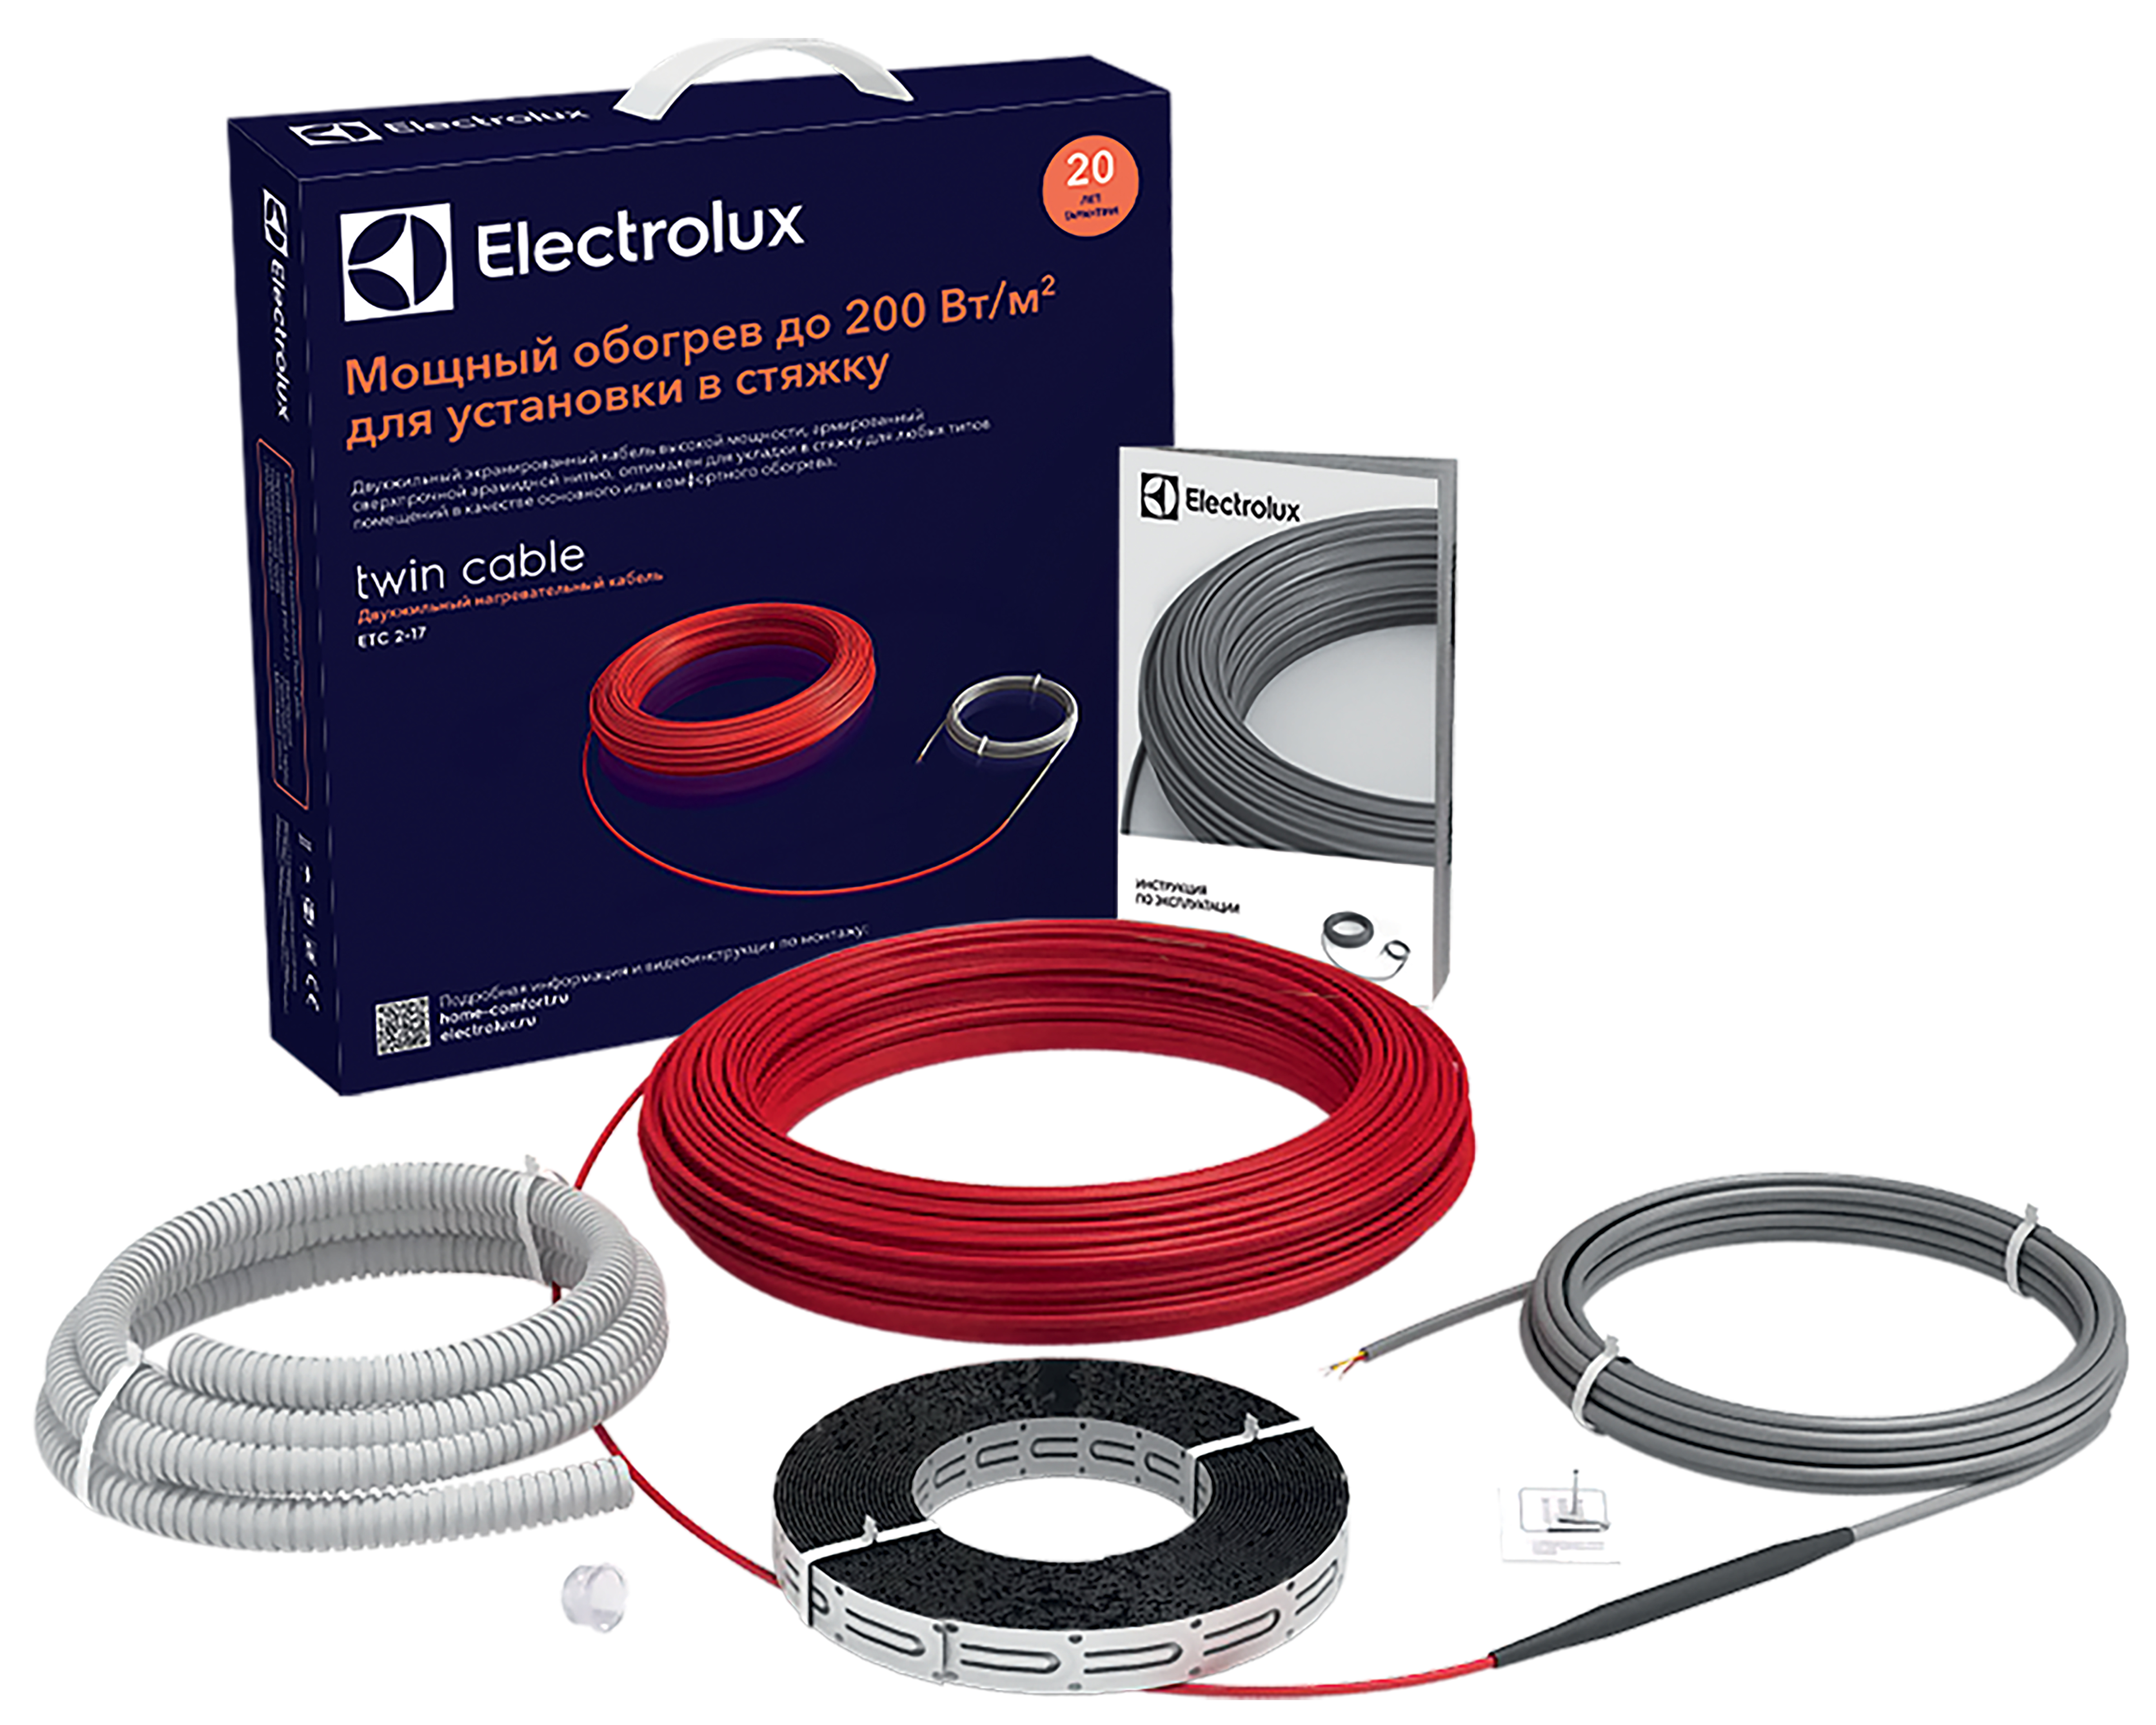 Теплый пол Electrolux под линолеум Electrolux Twin Cable ETC 2-17-1500